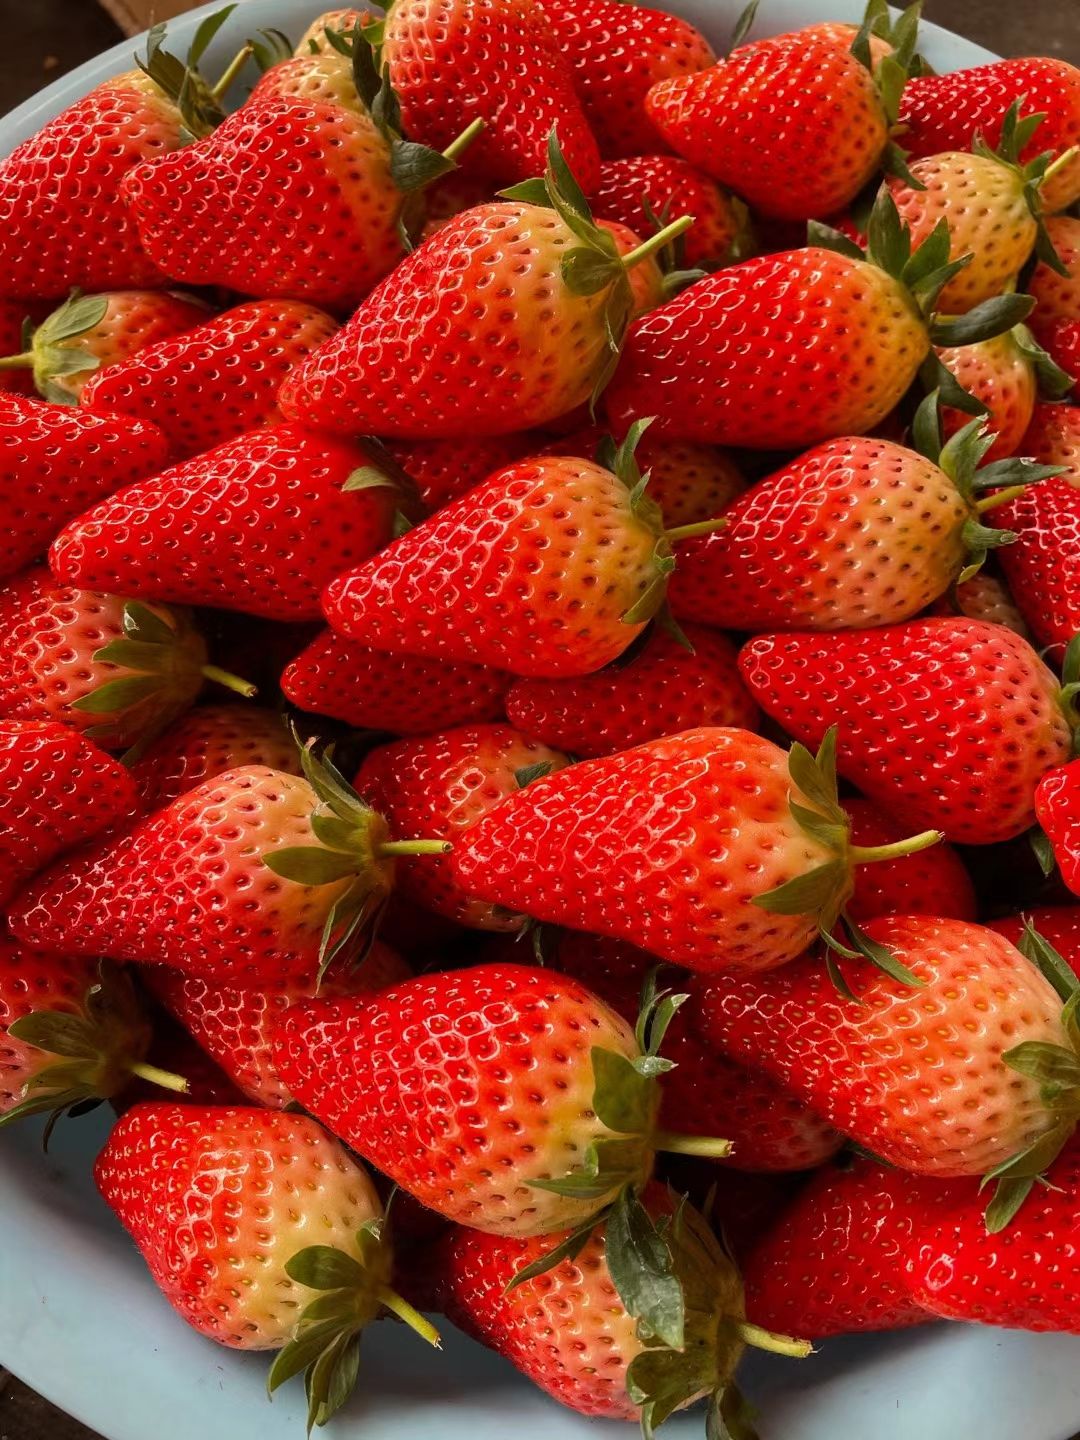 甜宝草莓 甜宝免洗草莓